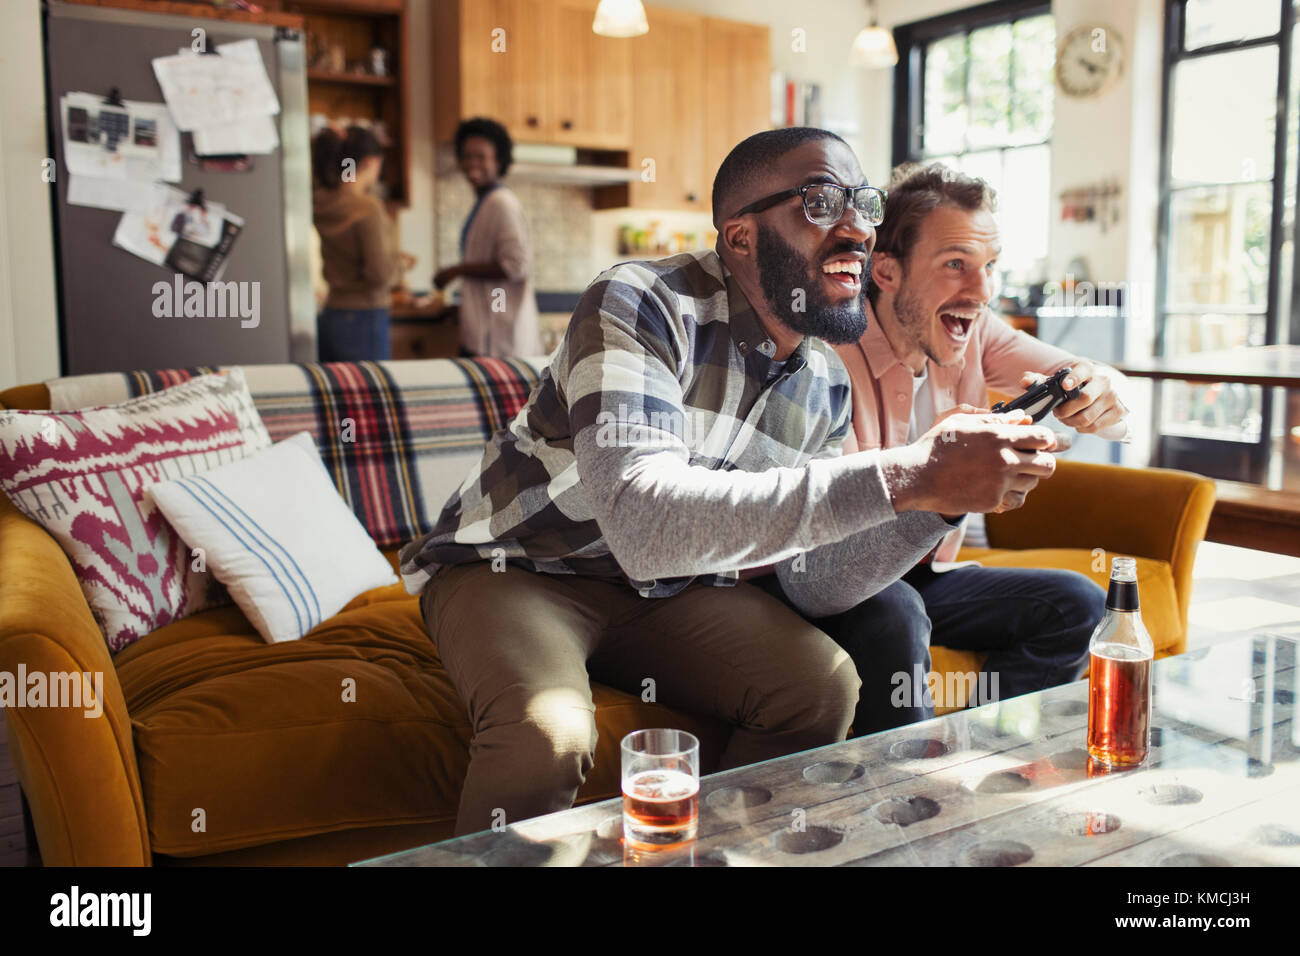 Des amis de sexe masculin boivent de la bière et jouent à un jeu vidéo dans la vie chambre Banque D'Images